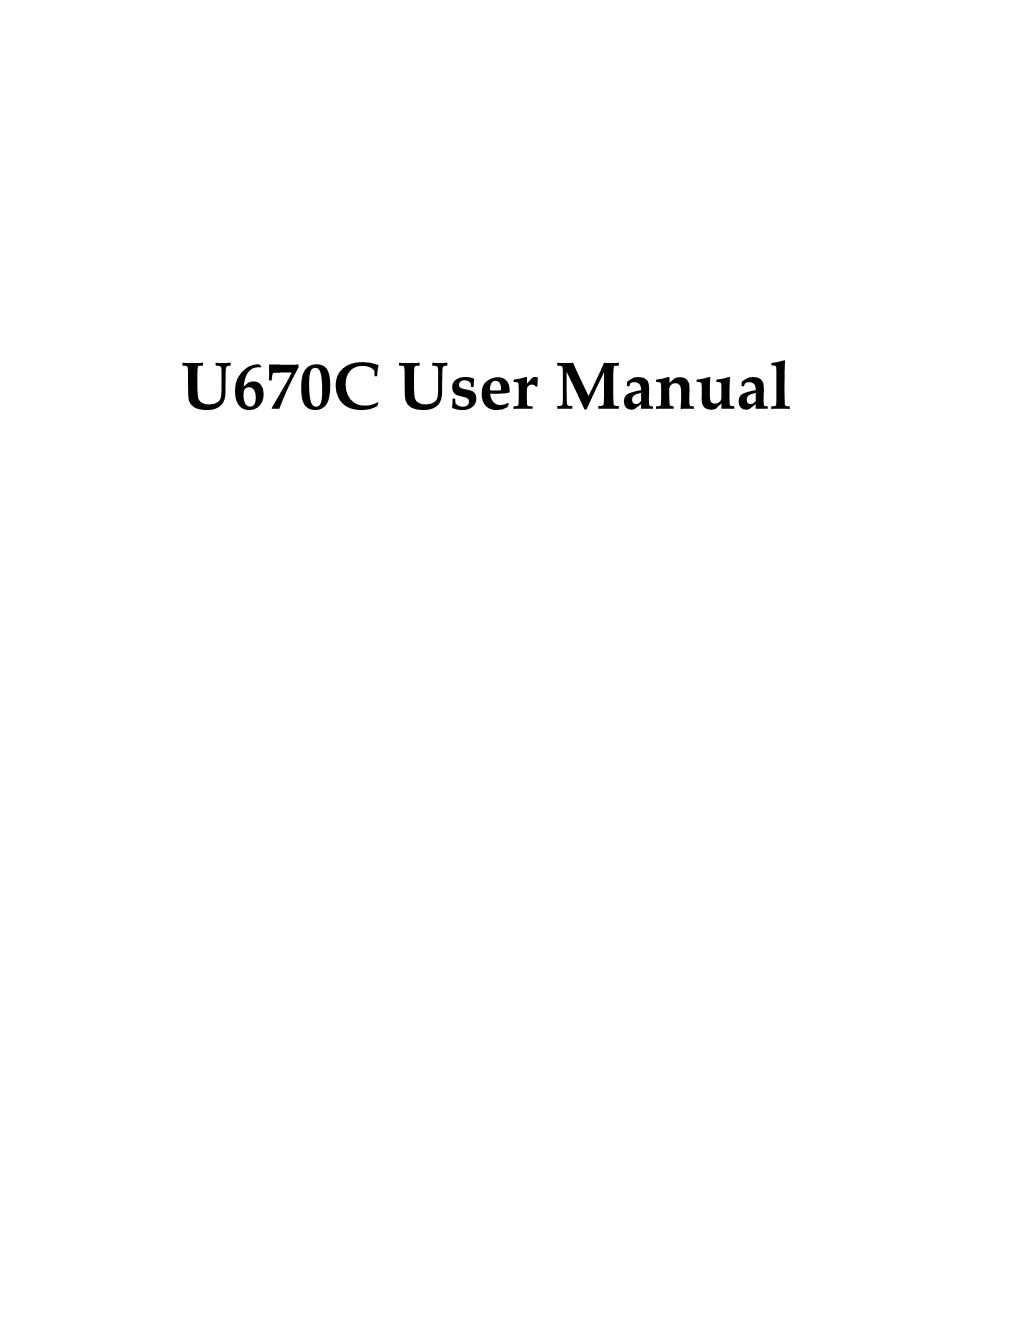 U670C User Manual